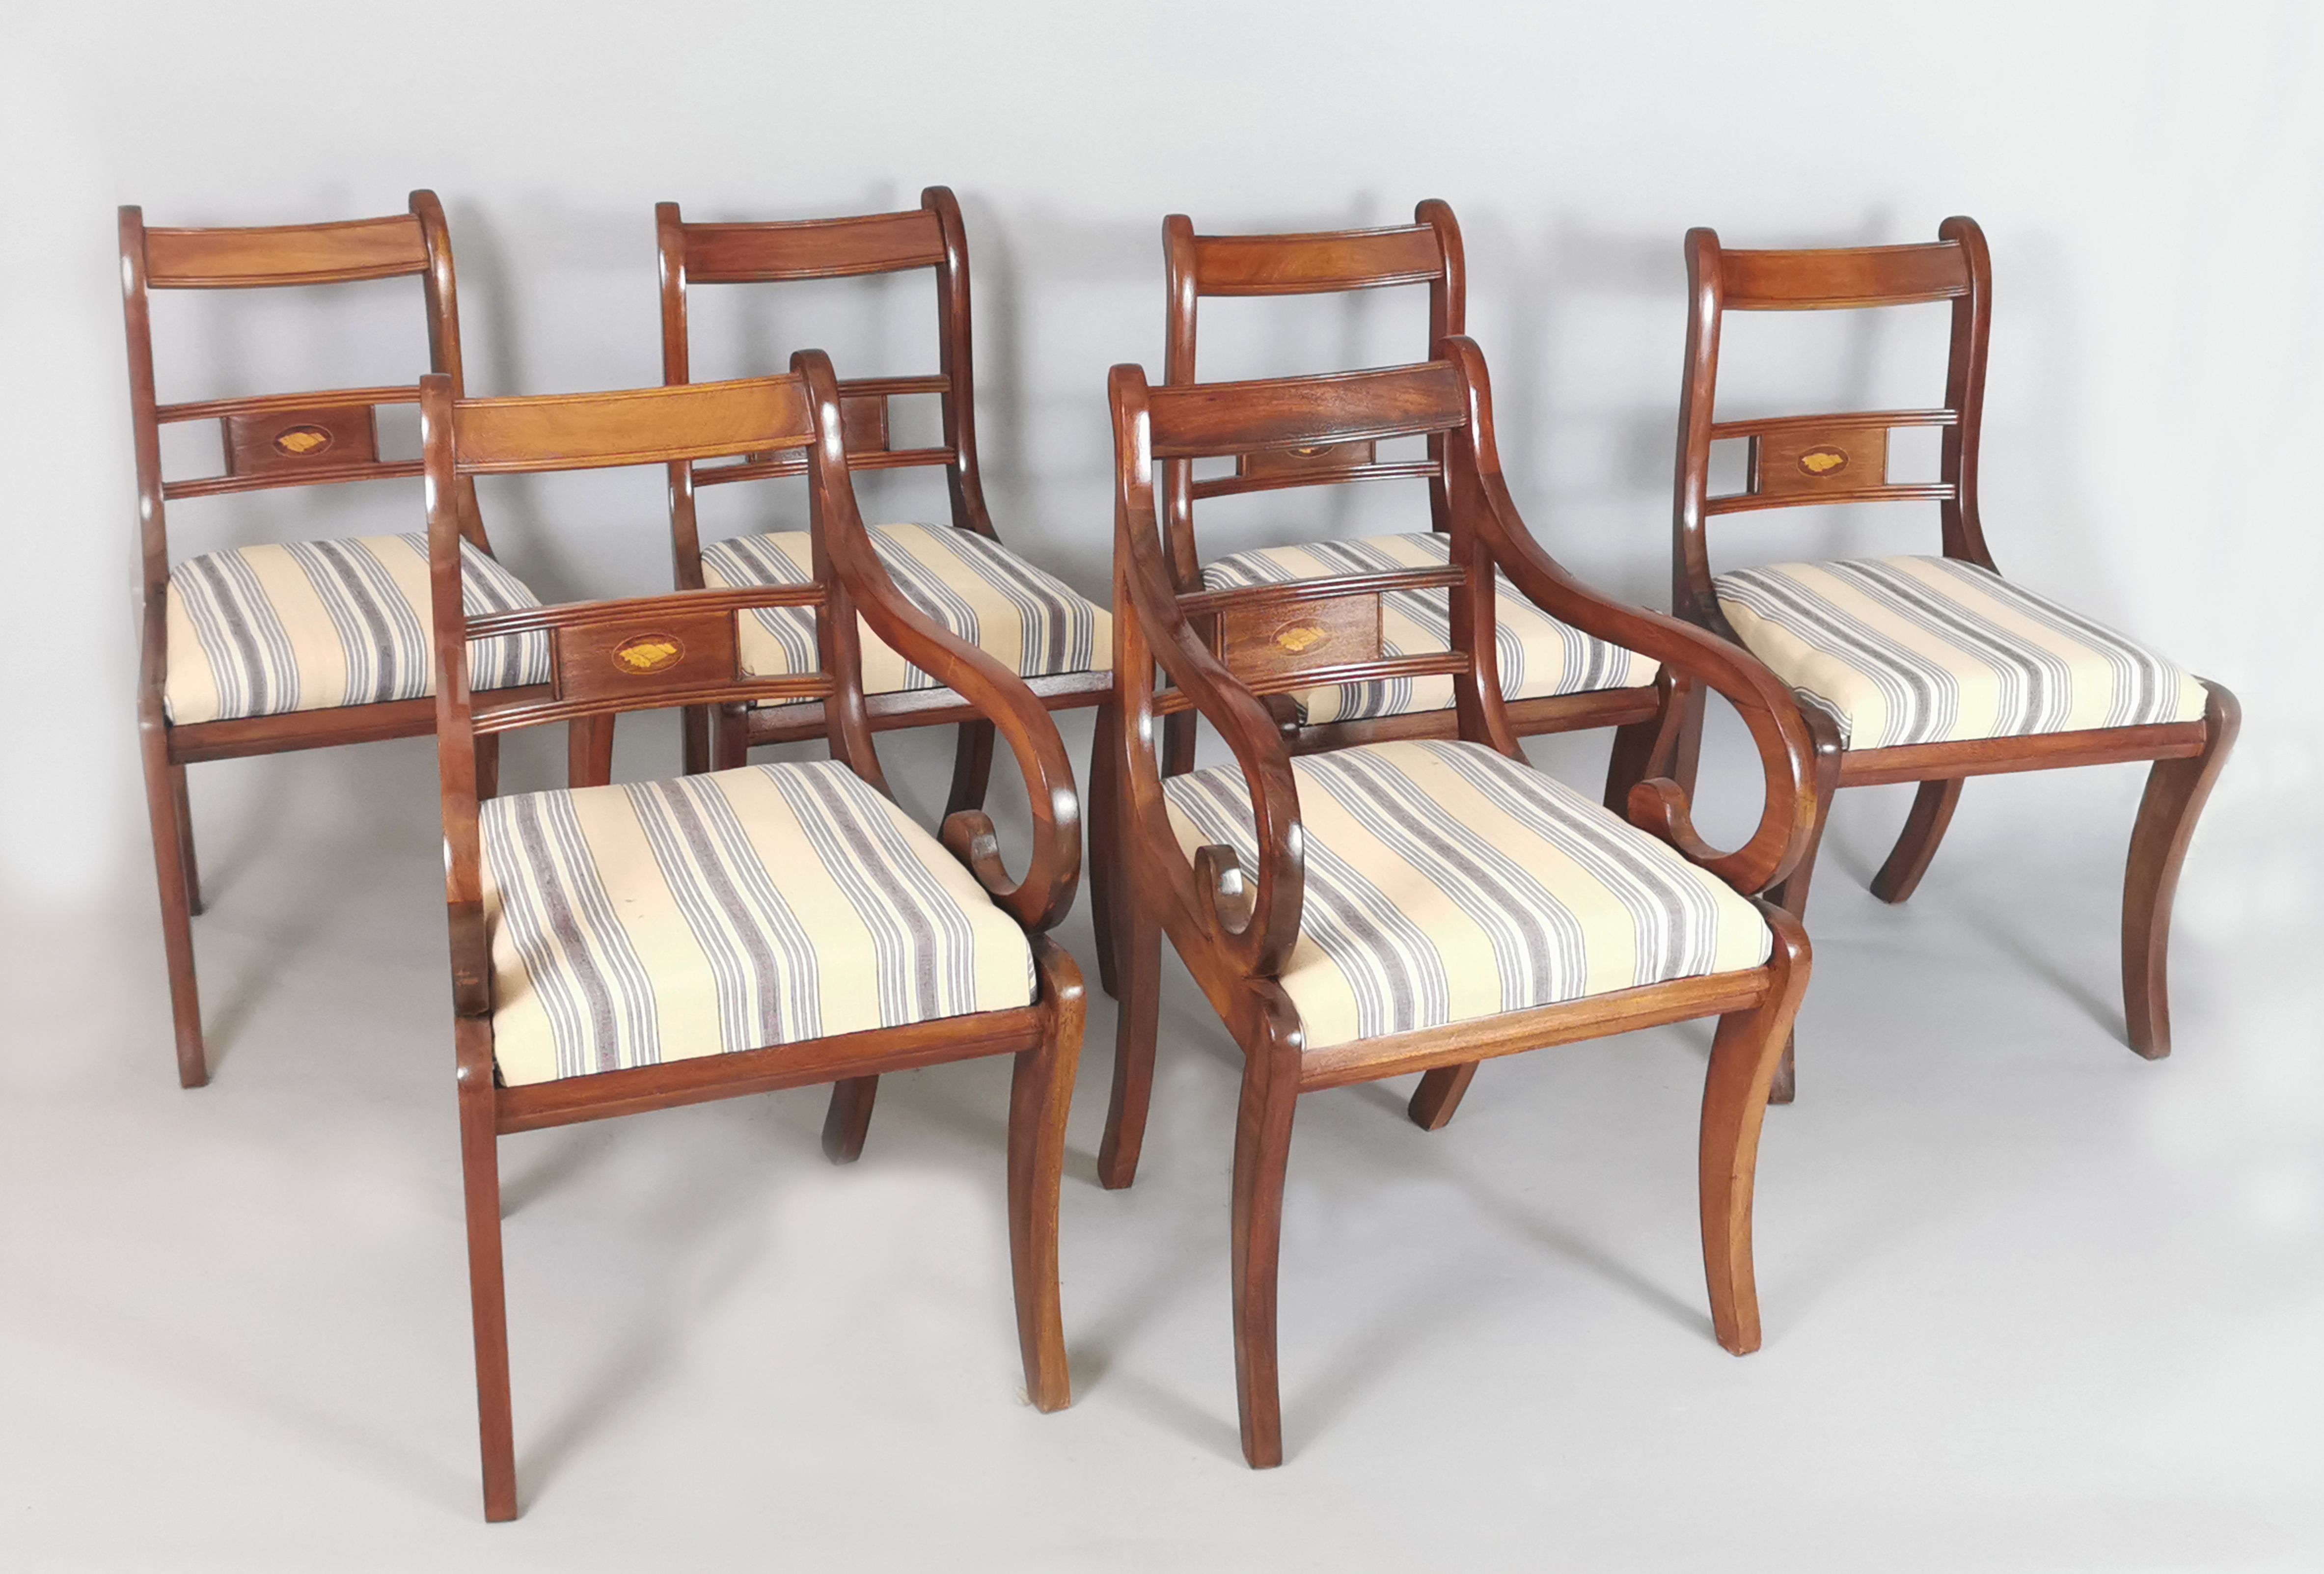 Komplet siedzisk w stylu biedermeier złożony z 2 foteli i 4 krzeseł